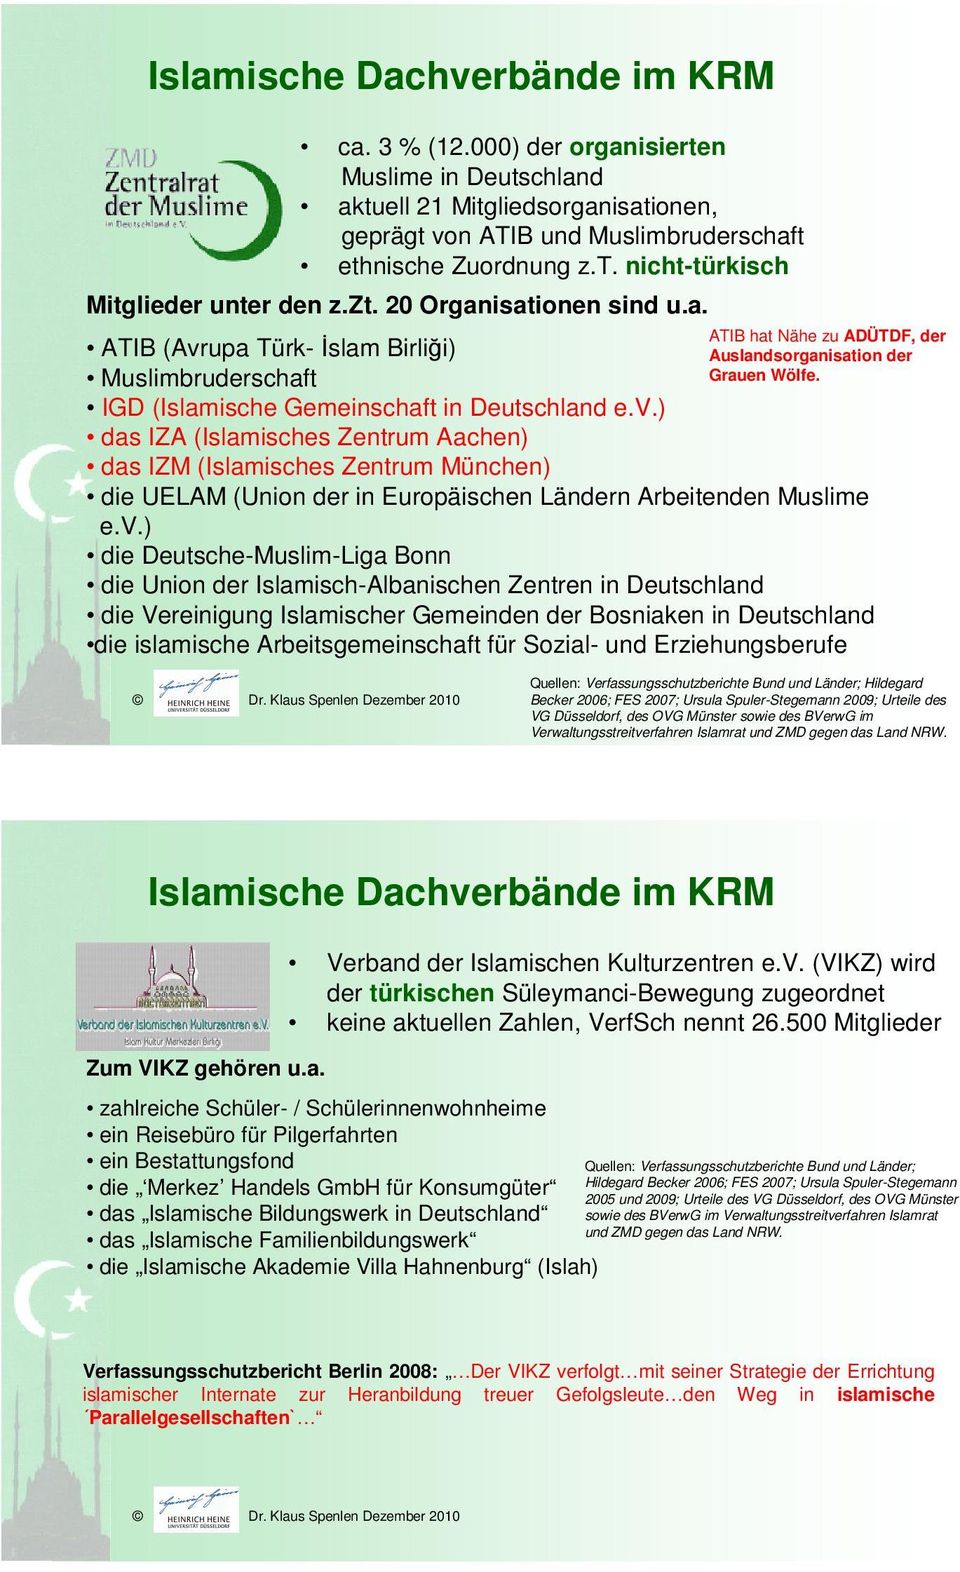 die UELAM (Union der in Europäischen Ländern Arbeitenden Muslime e.v.